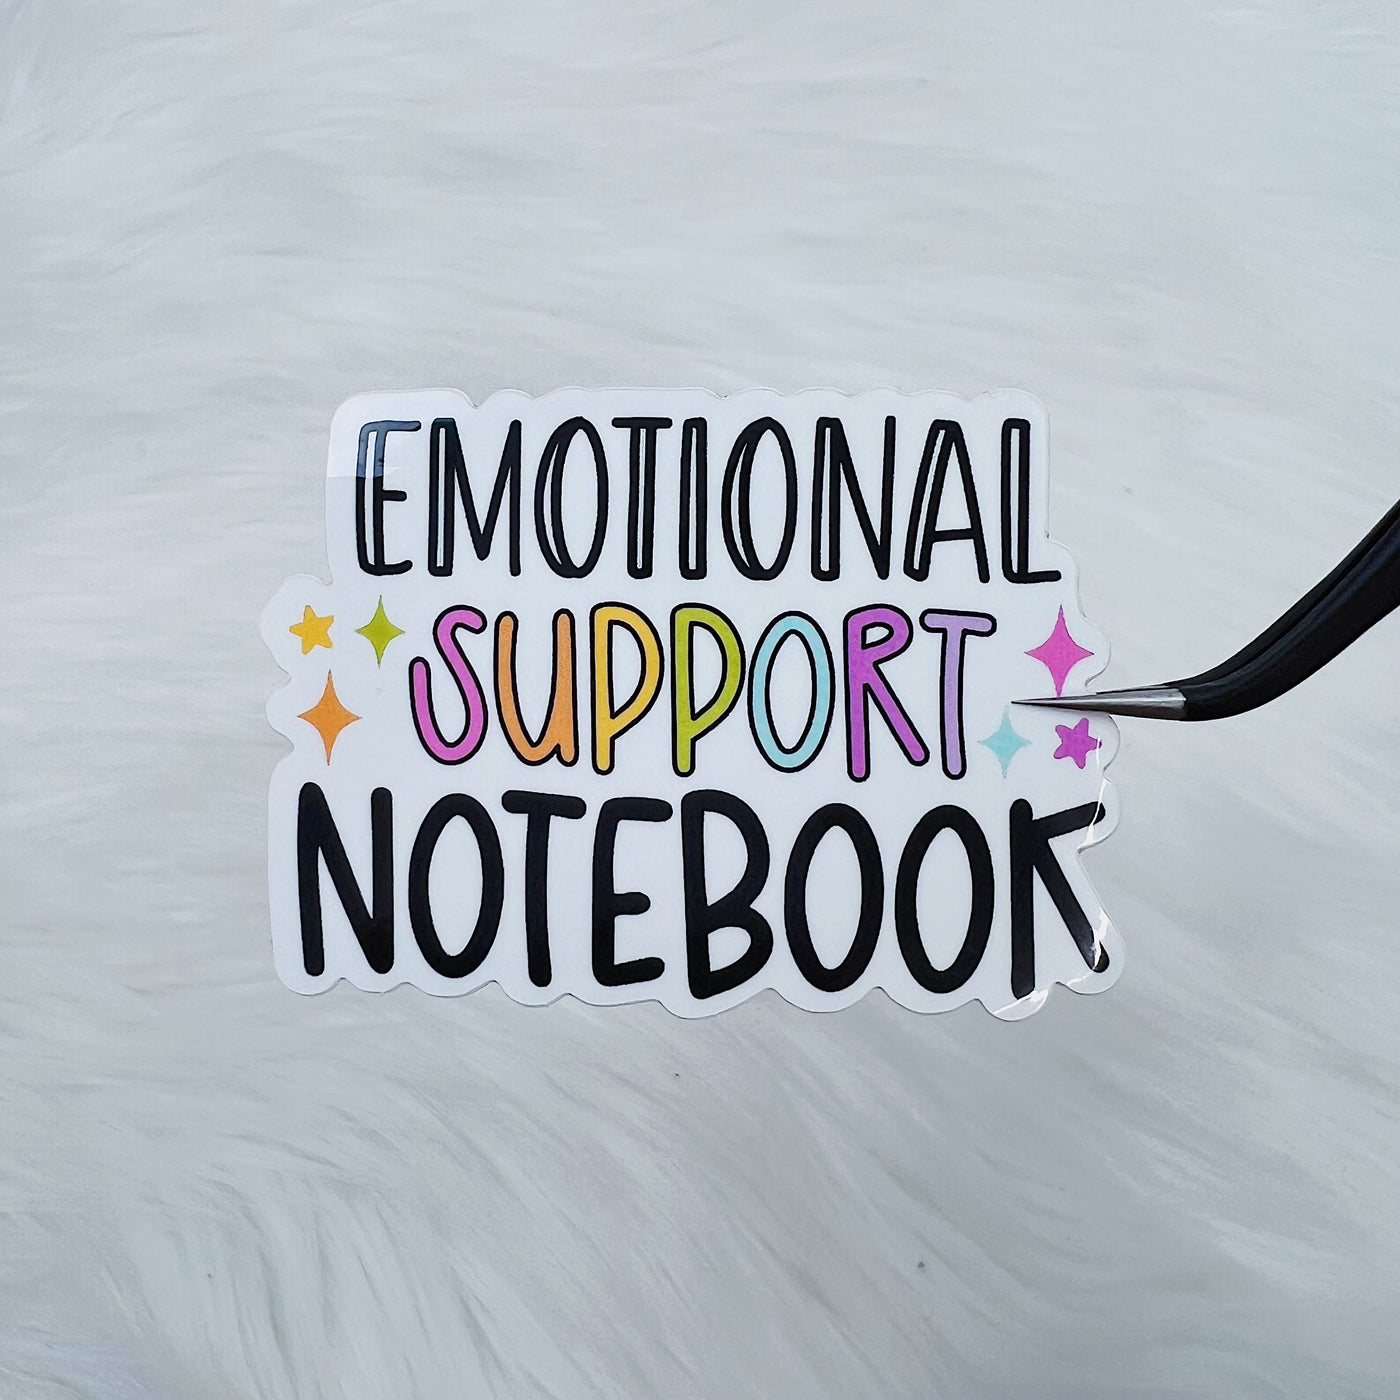 Emotional Support Notebook Vinyl Sticker Die Cut